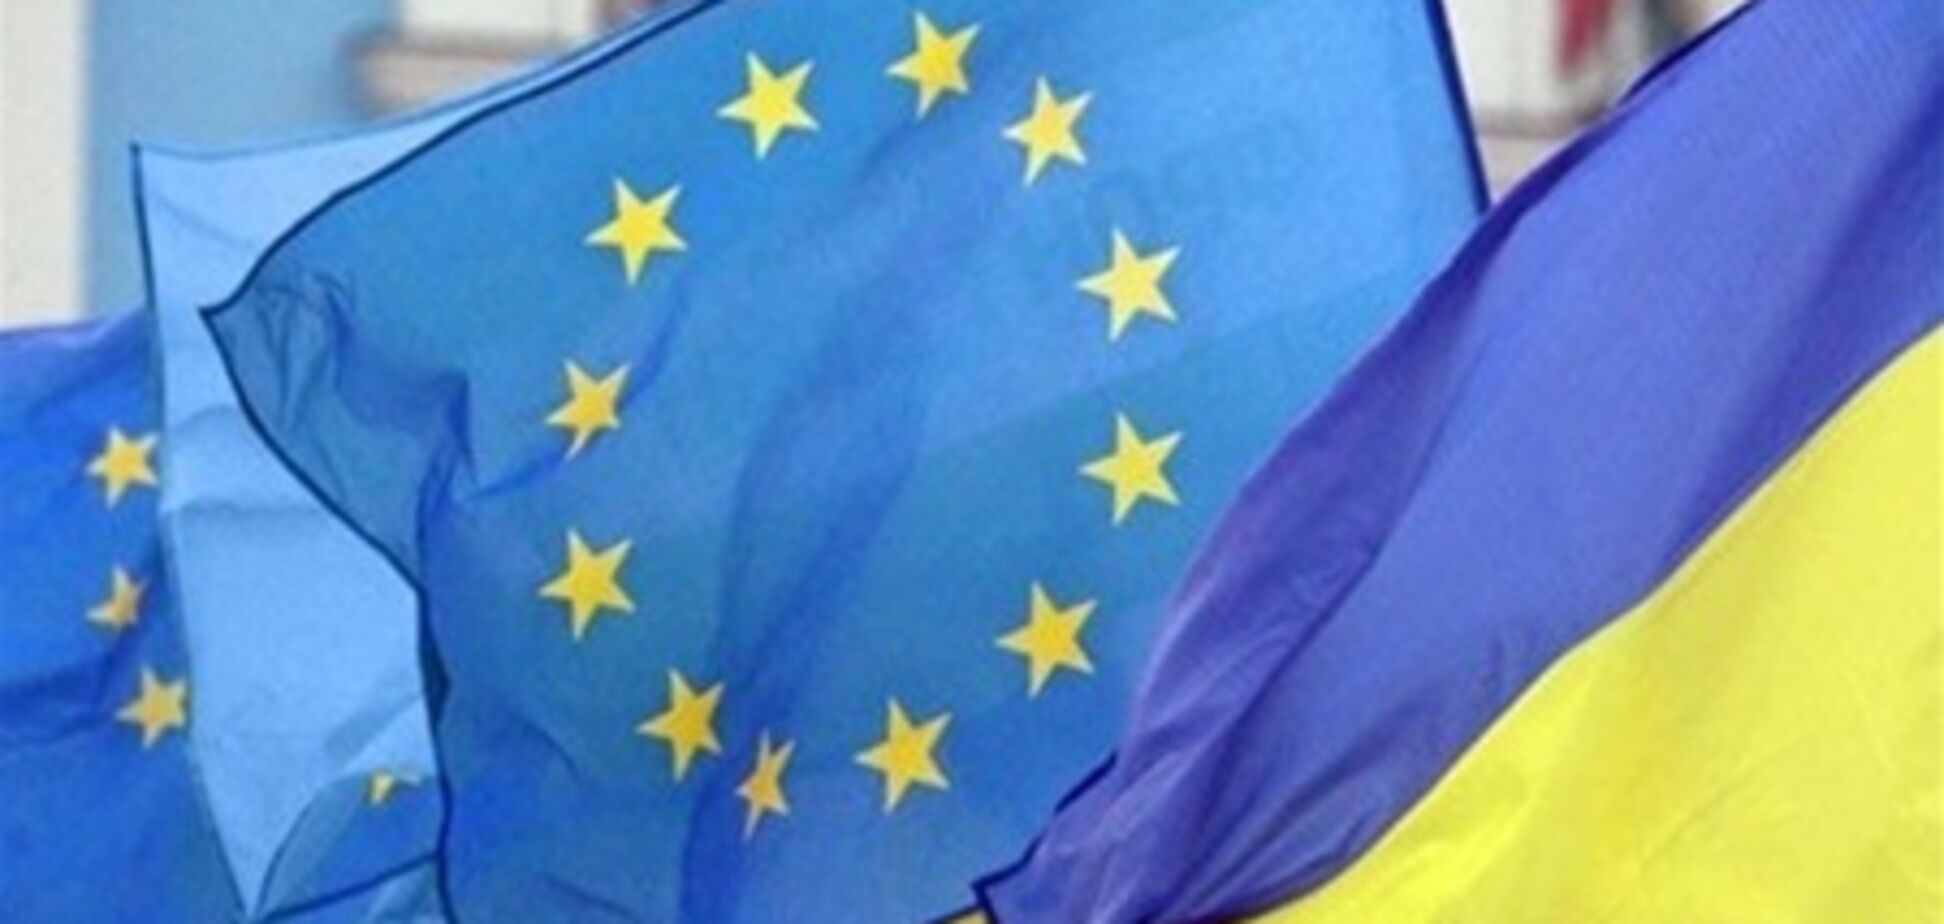 ЄП: не треба припиняти діалог з Києвом через Тимошенко